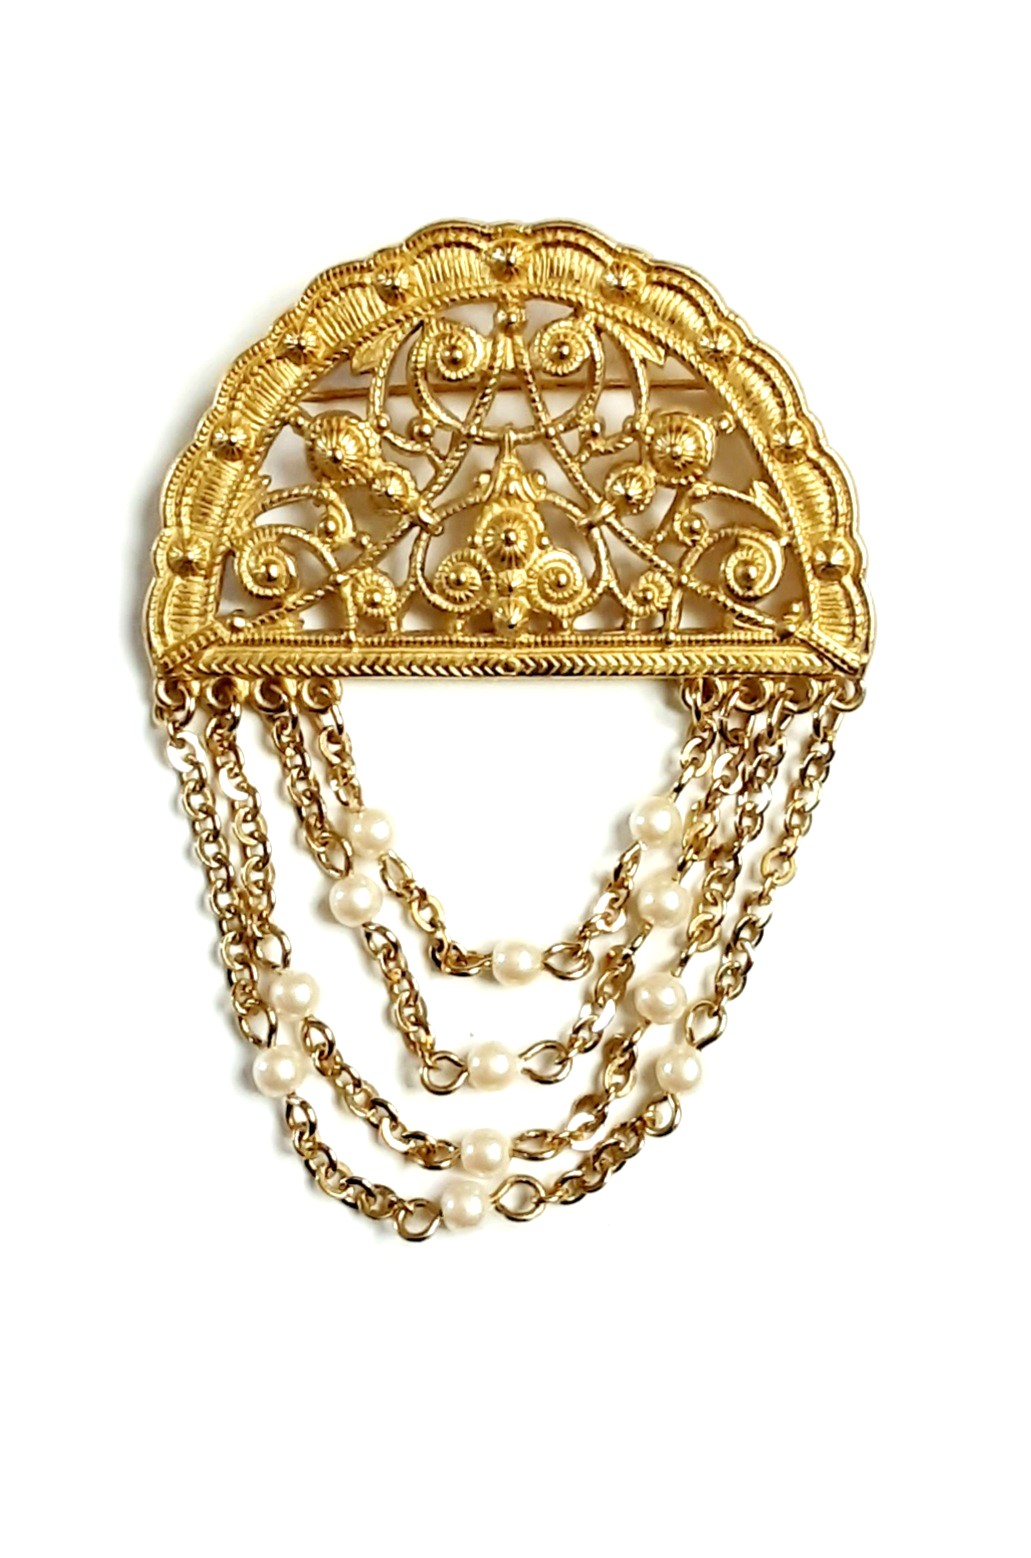 Monet gilt pearls brooch